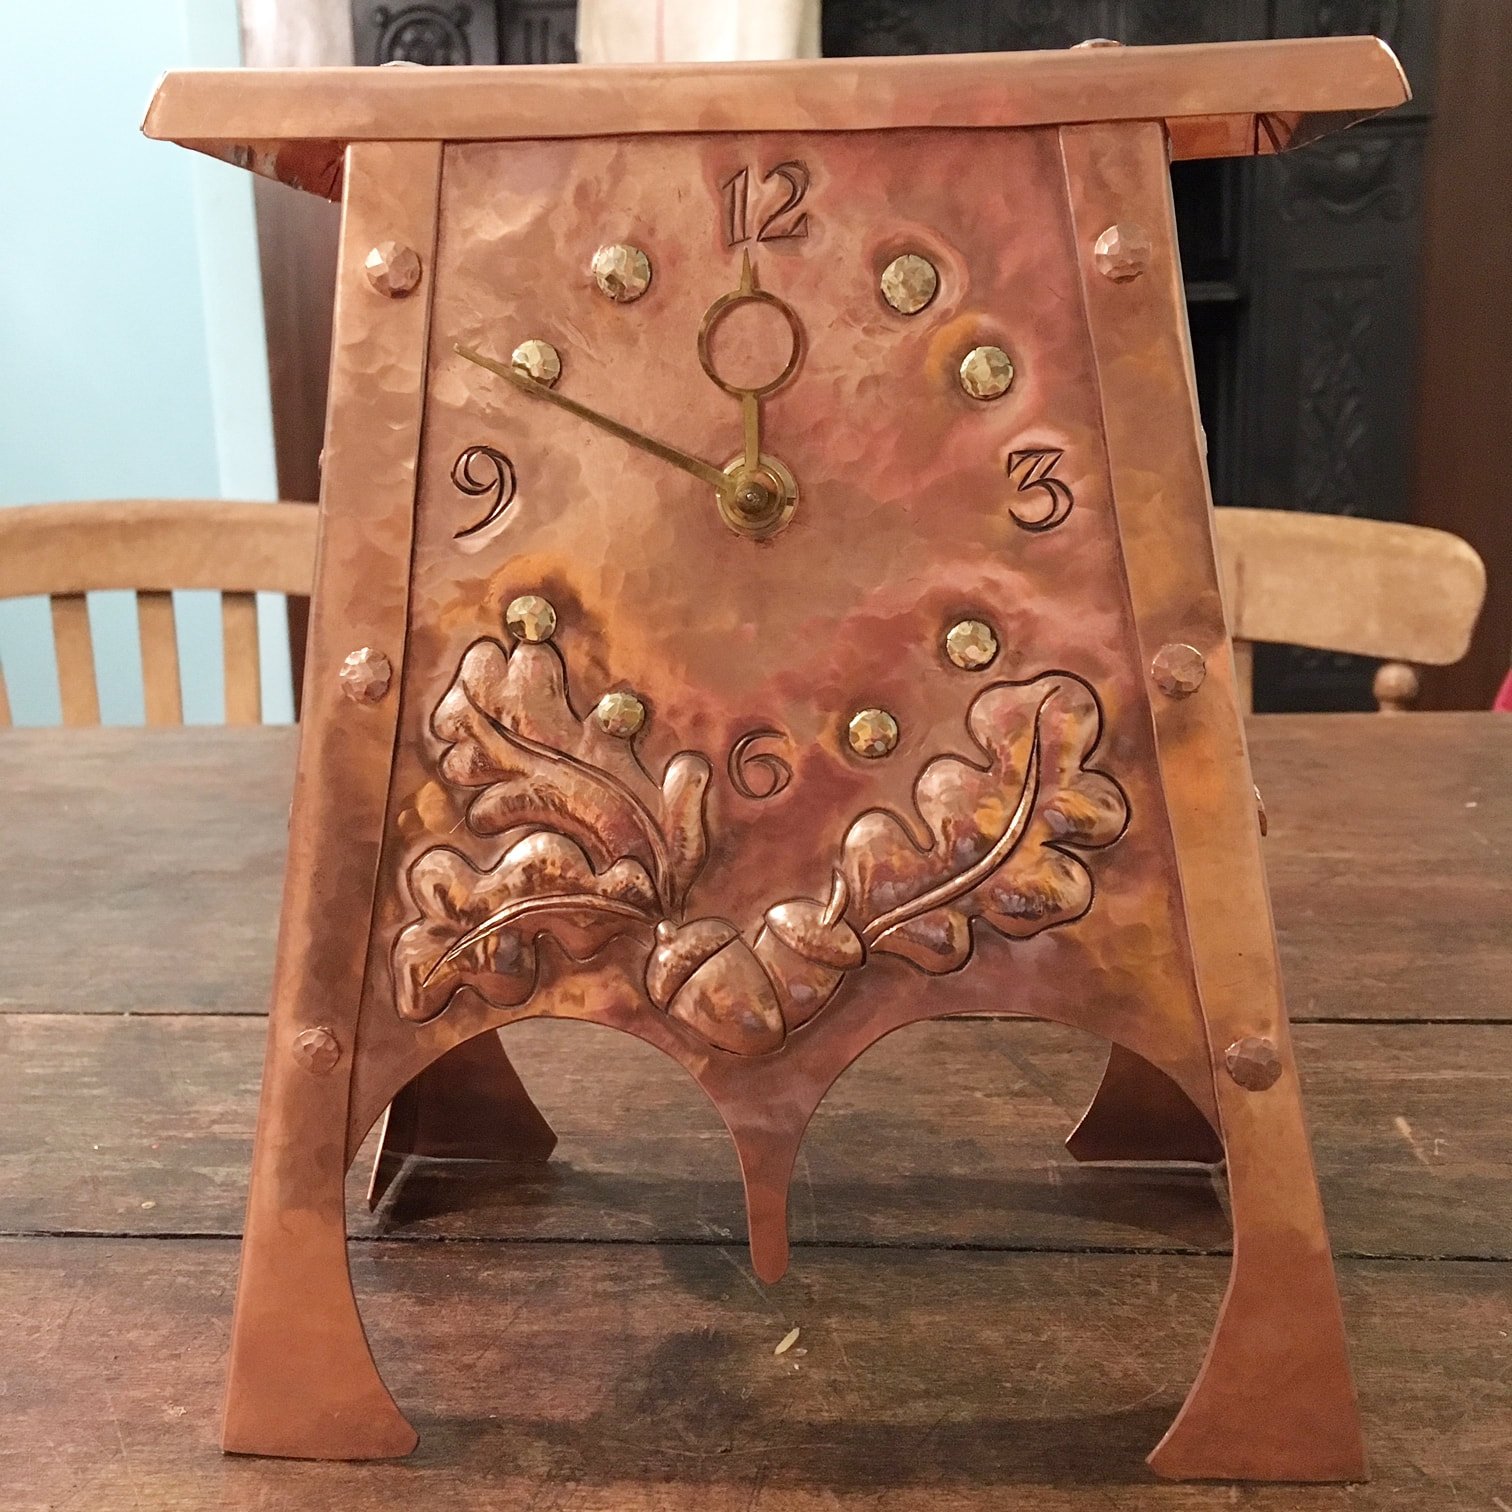 Make a Copper Clock (5 Day Workshop)